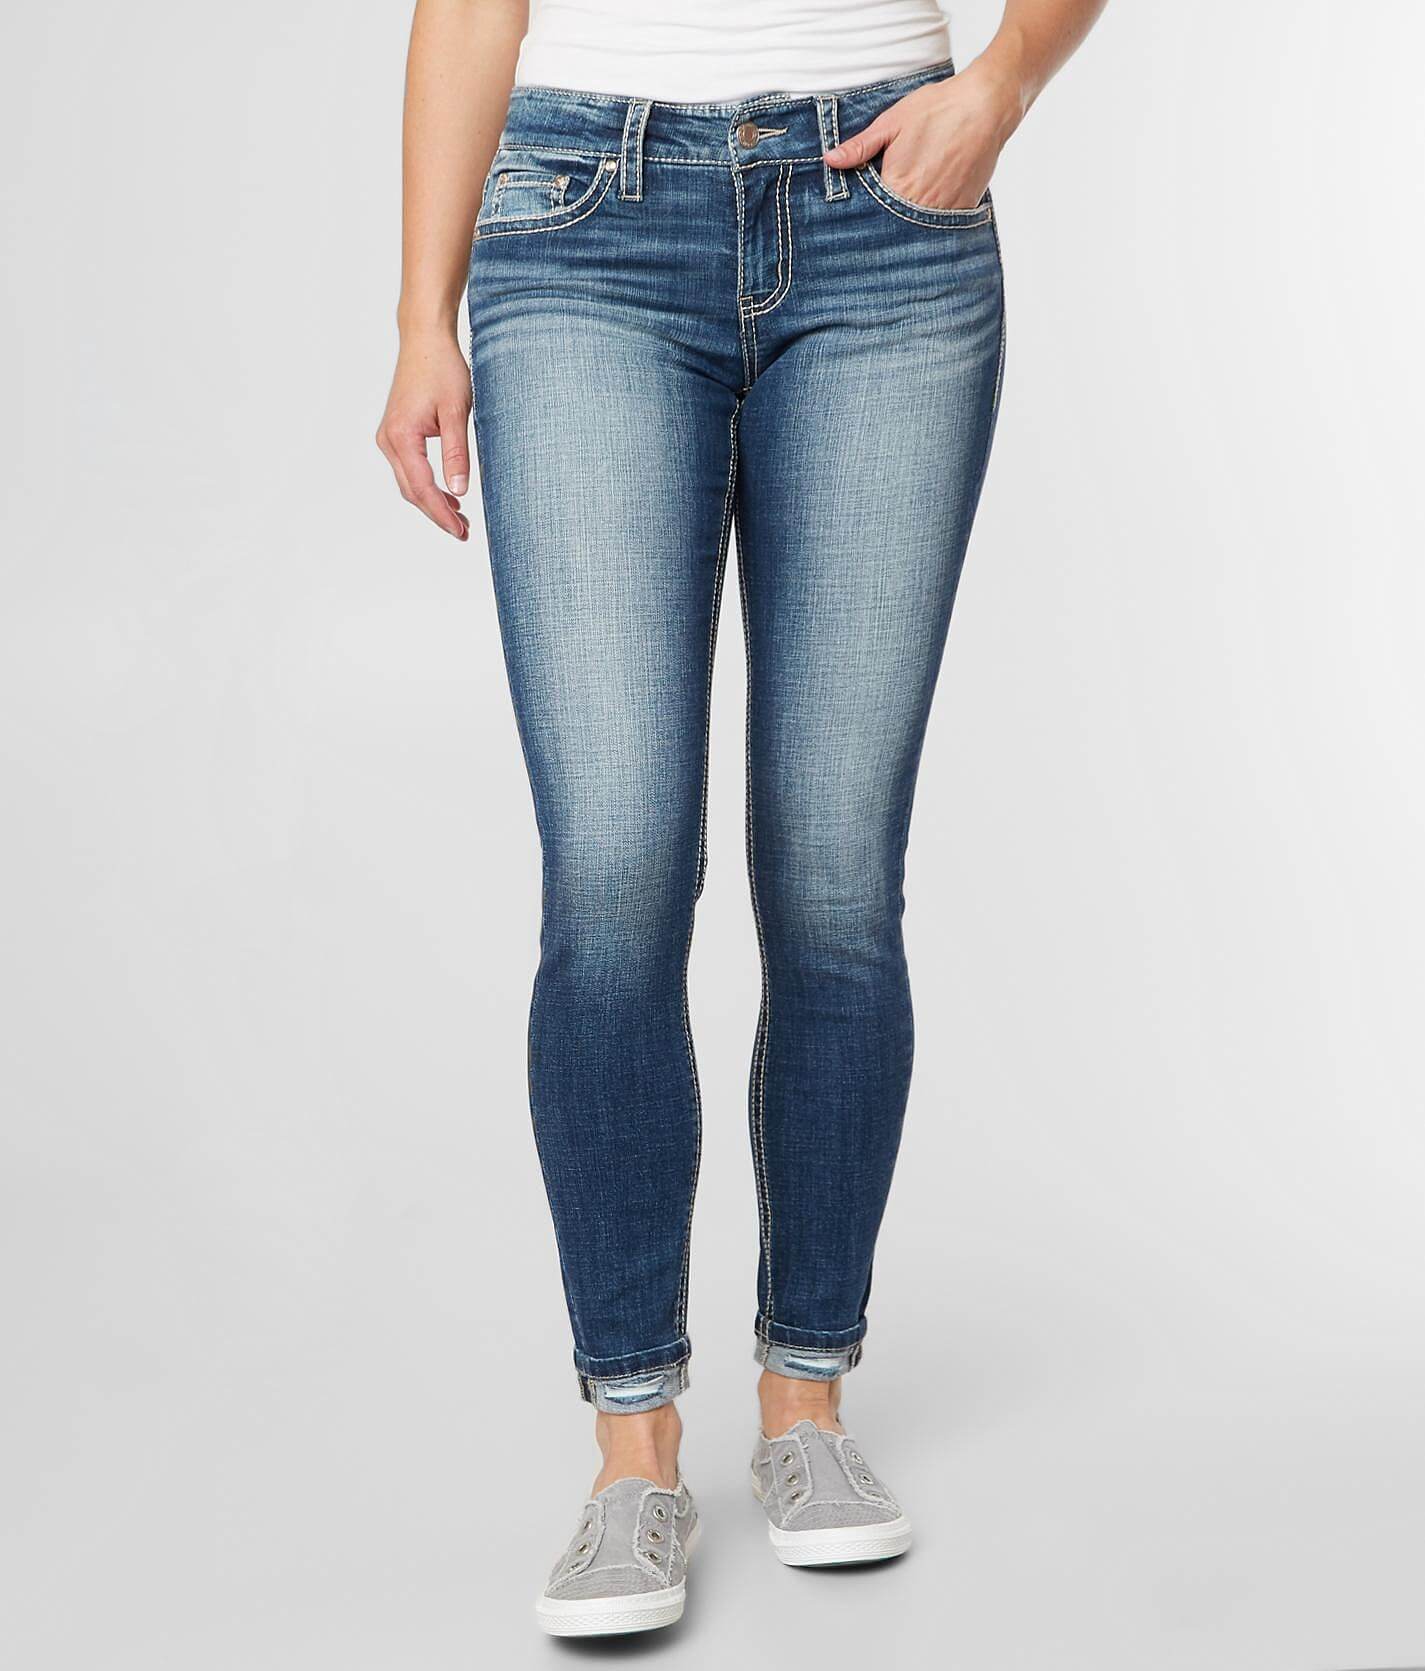 daytrip virgo straight jeans